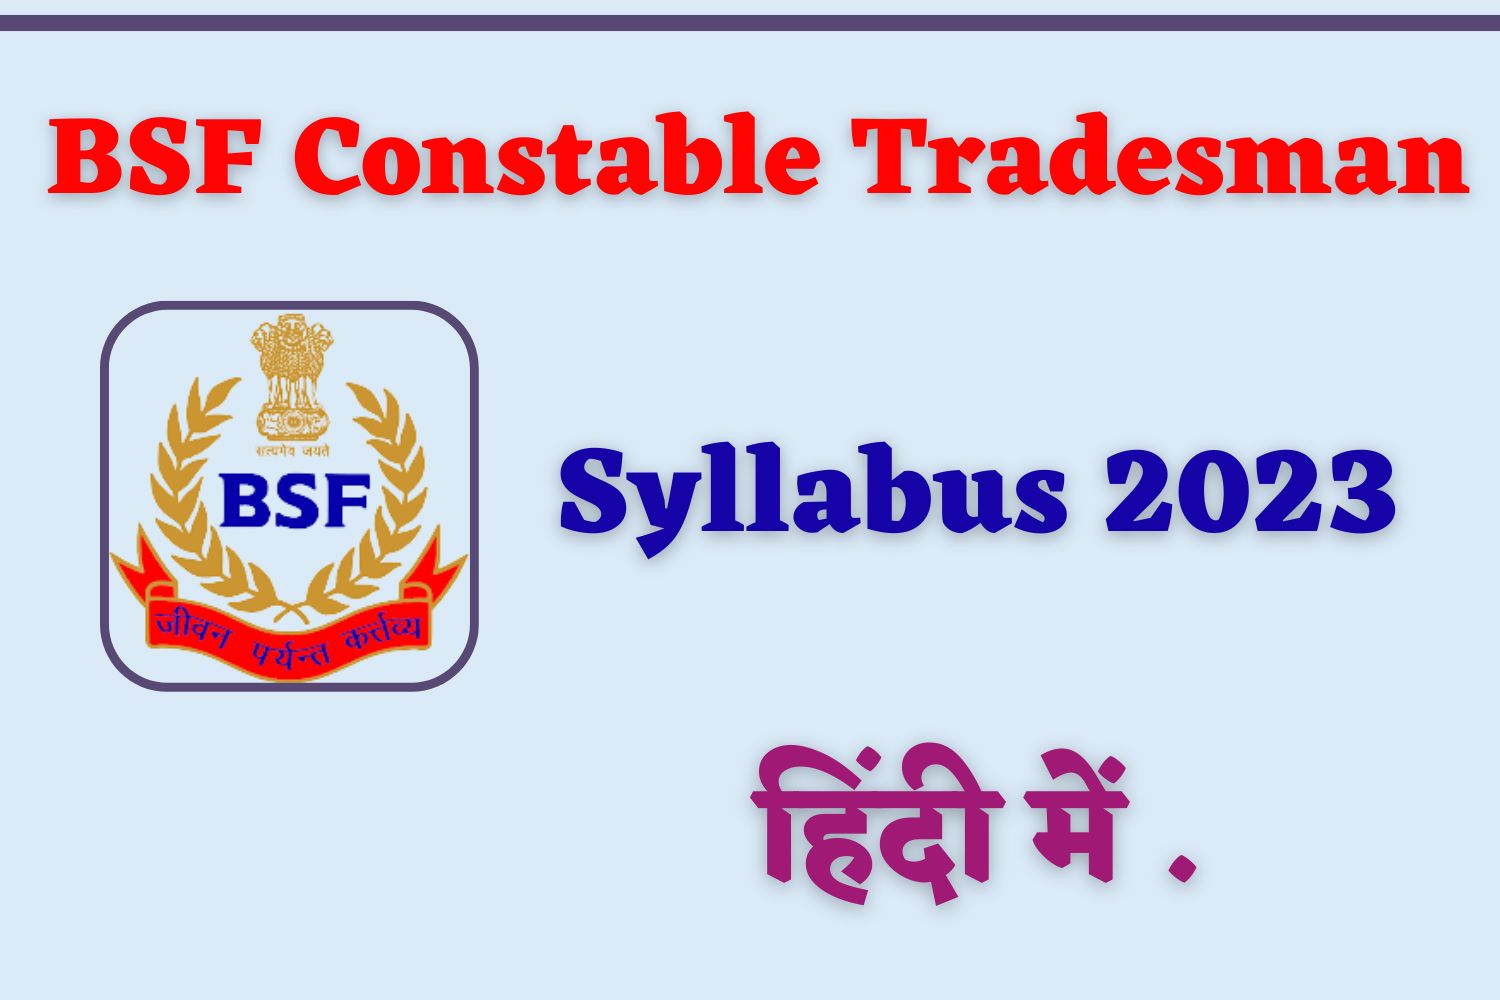 BSF Constable Tradesman Syllabus 2023 In Hindi | बीएसएफ ट्रेड्समैन सिलेबस हिंदी में